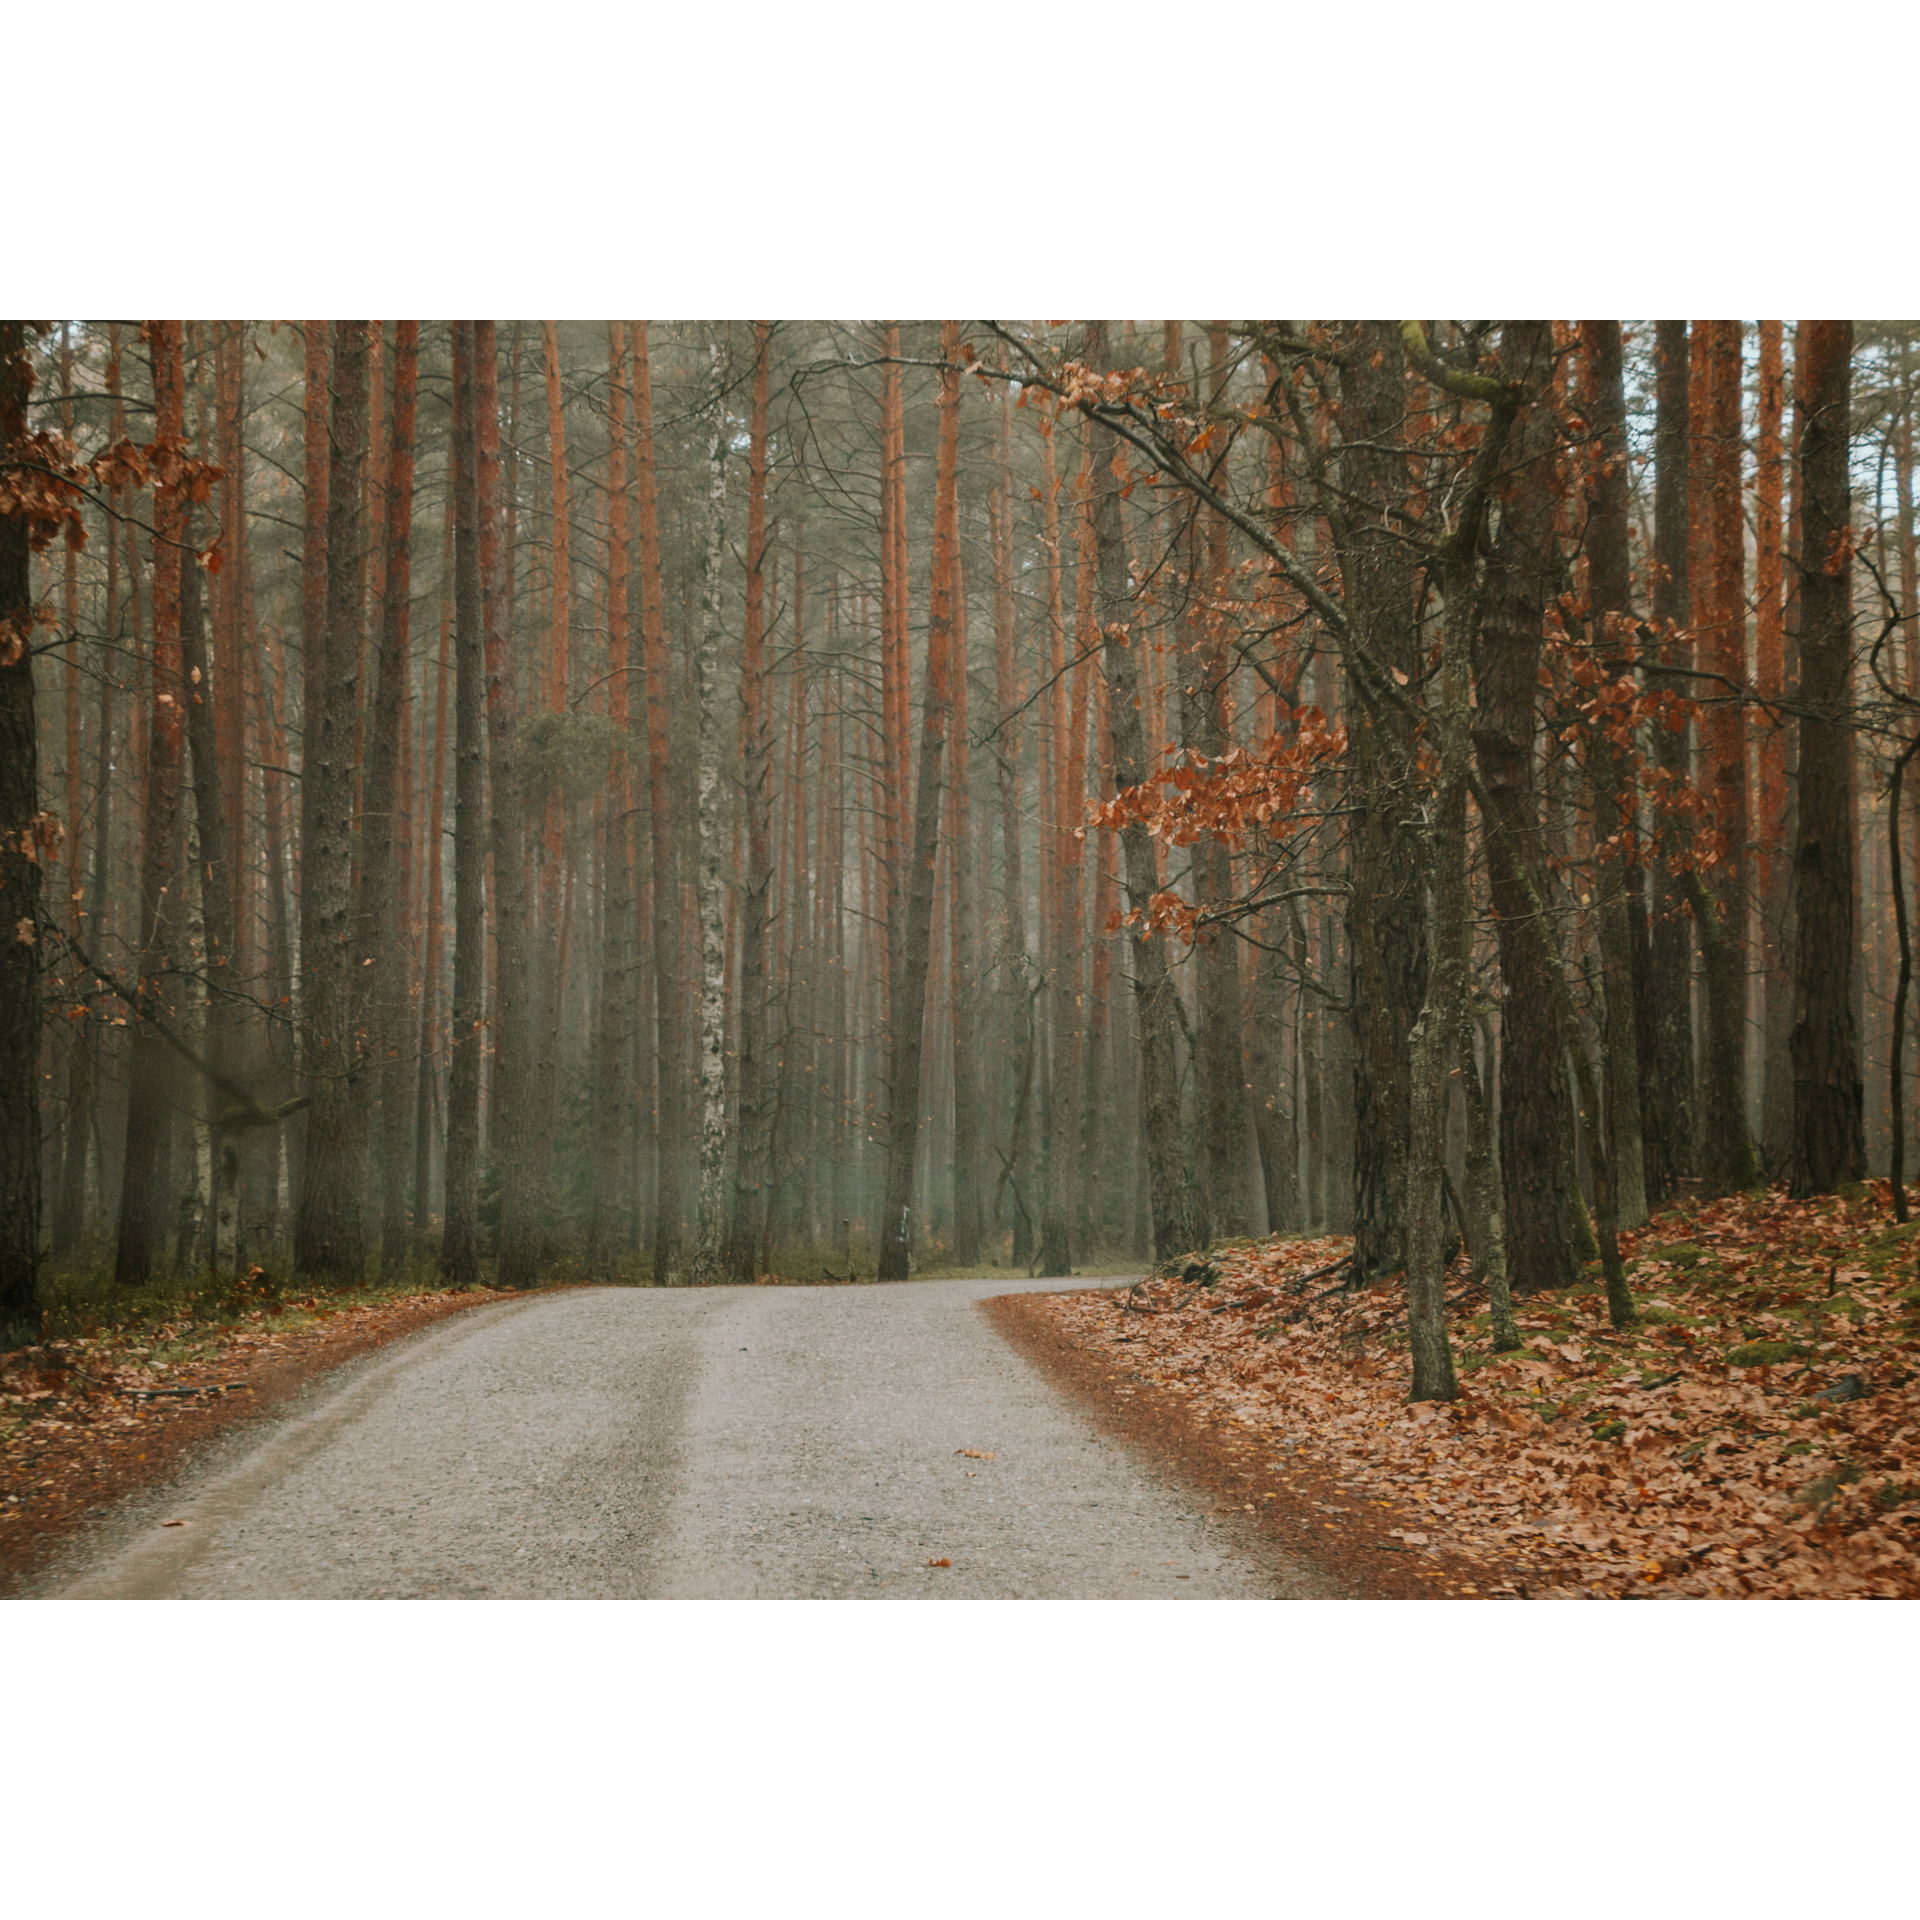 Droga kamienista prowadząca przez las, na poboczu brązowo-rude liście